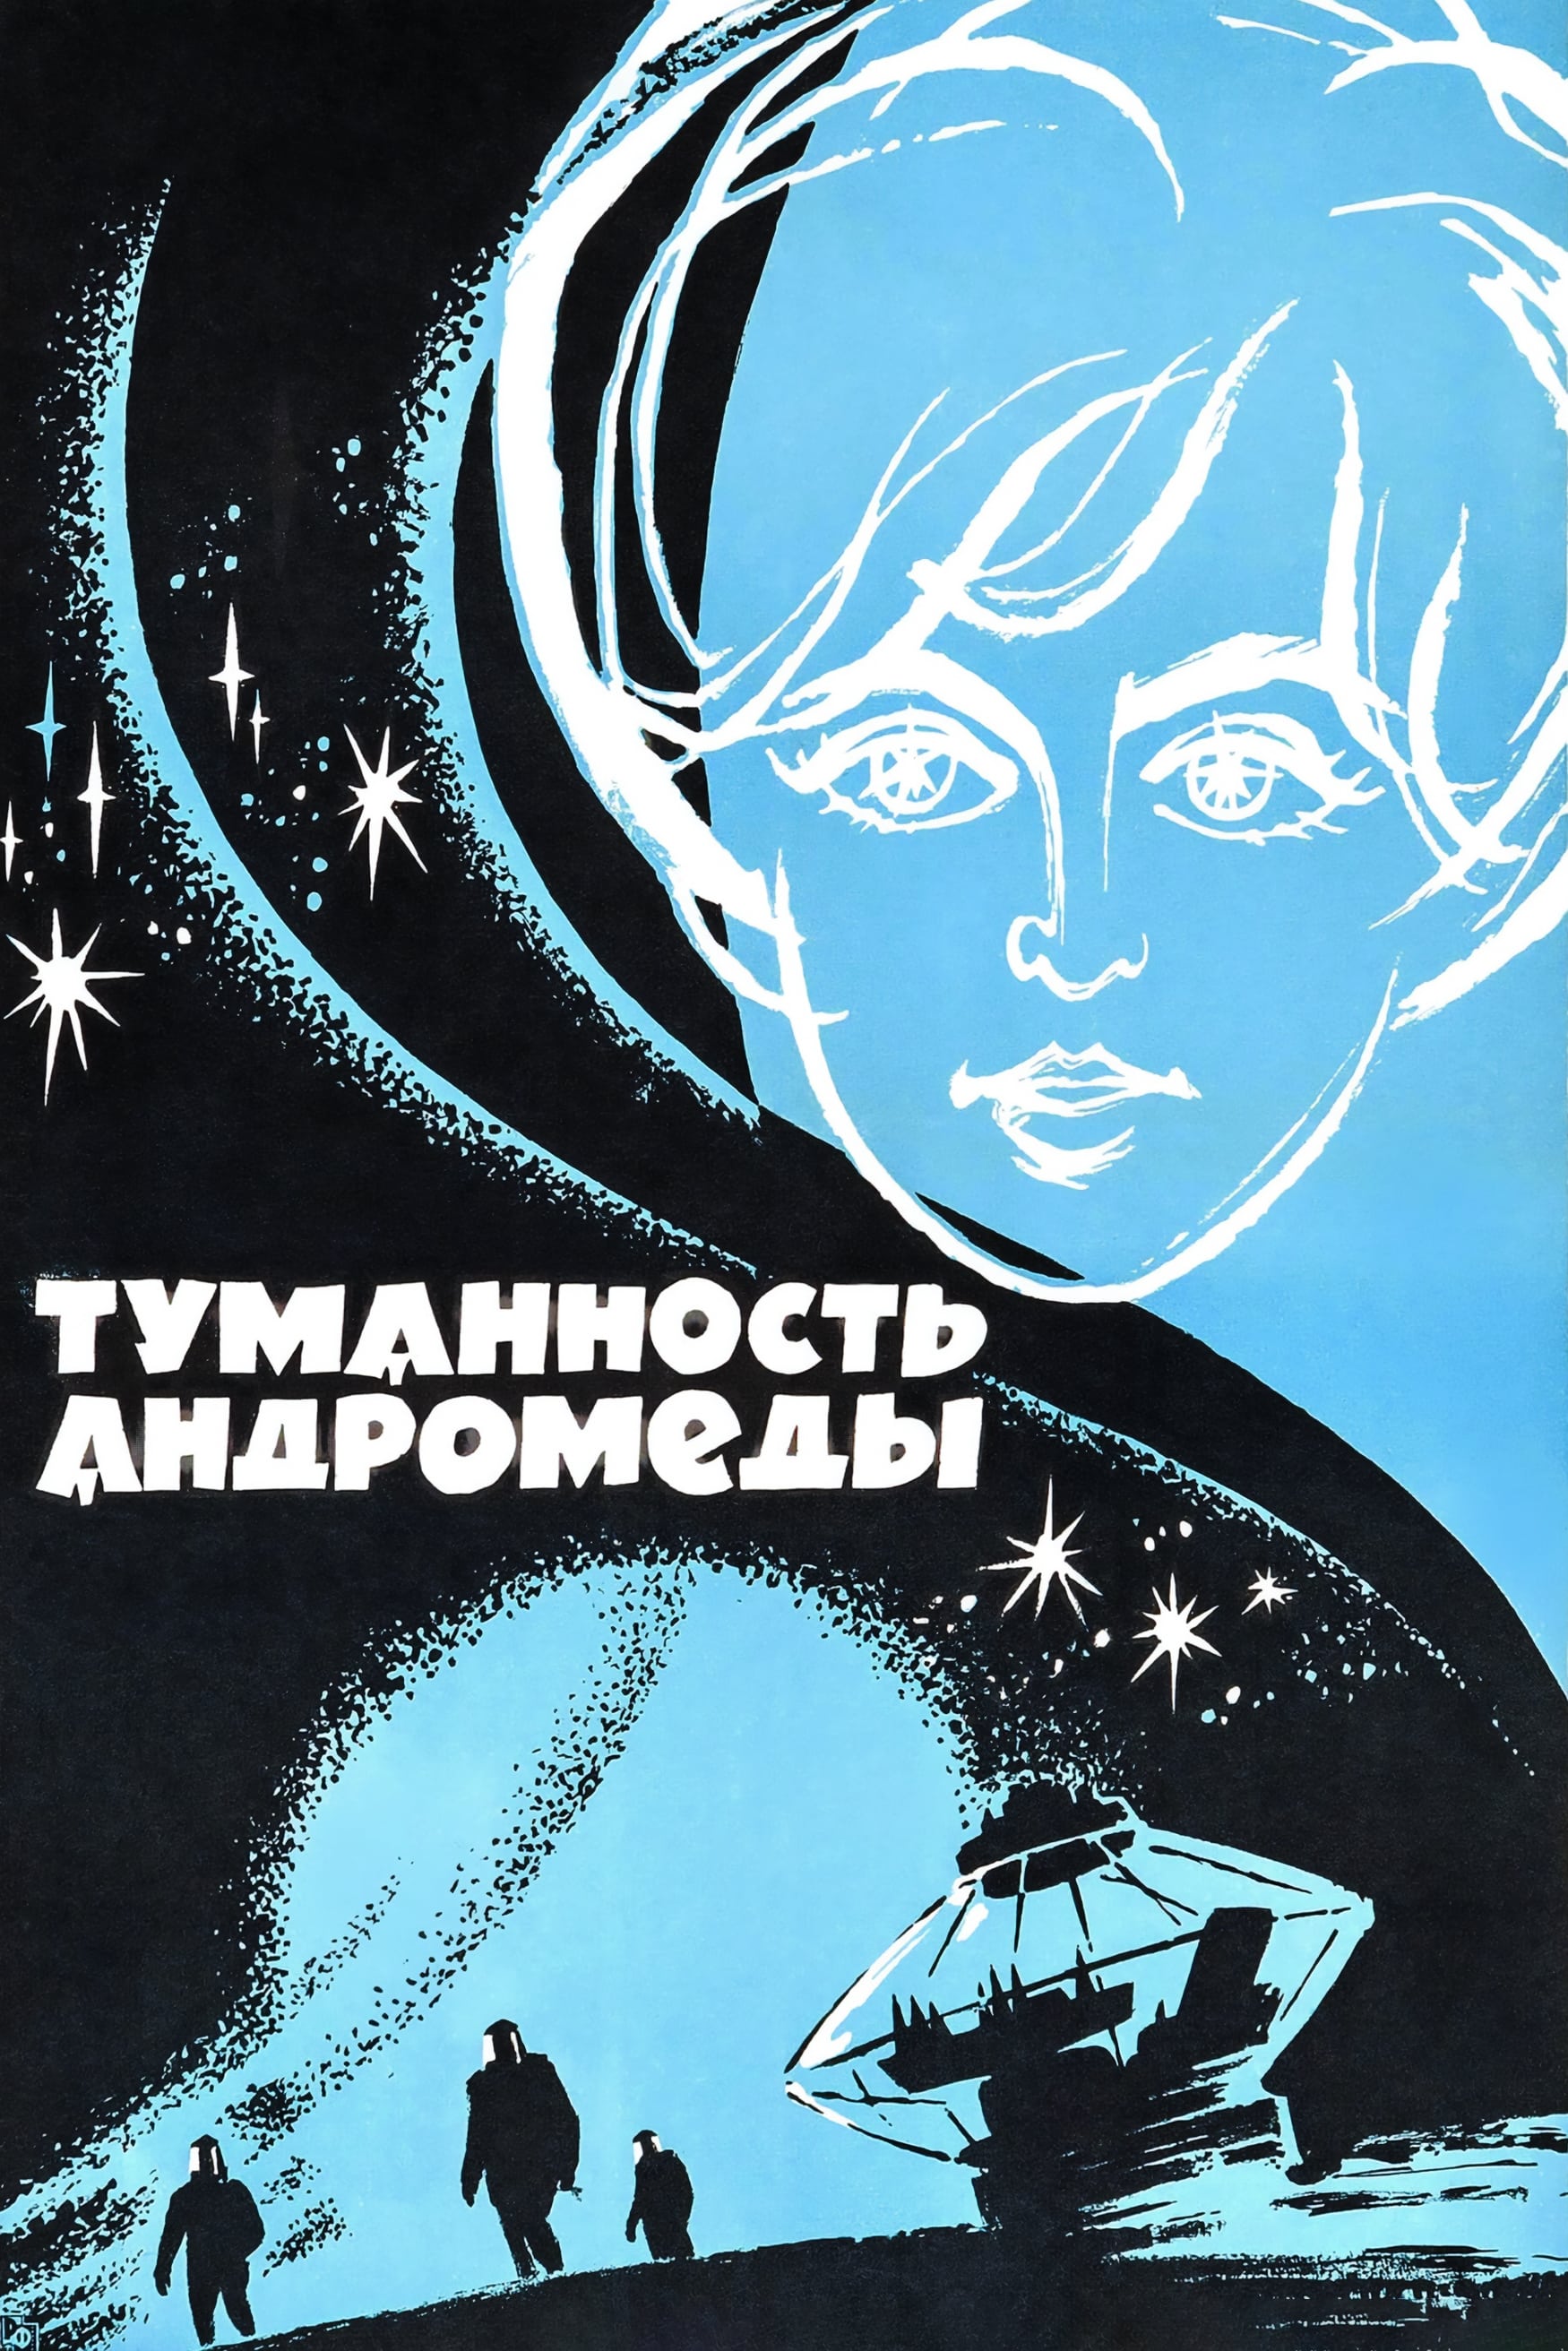 Andromeda Nebula (1967)